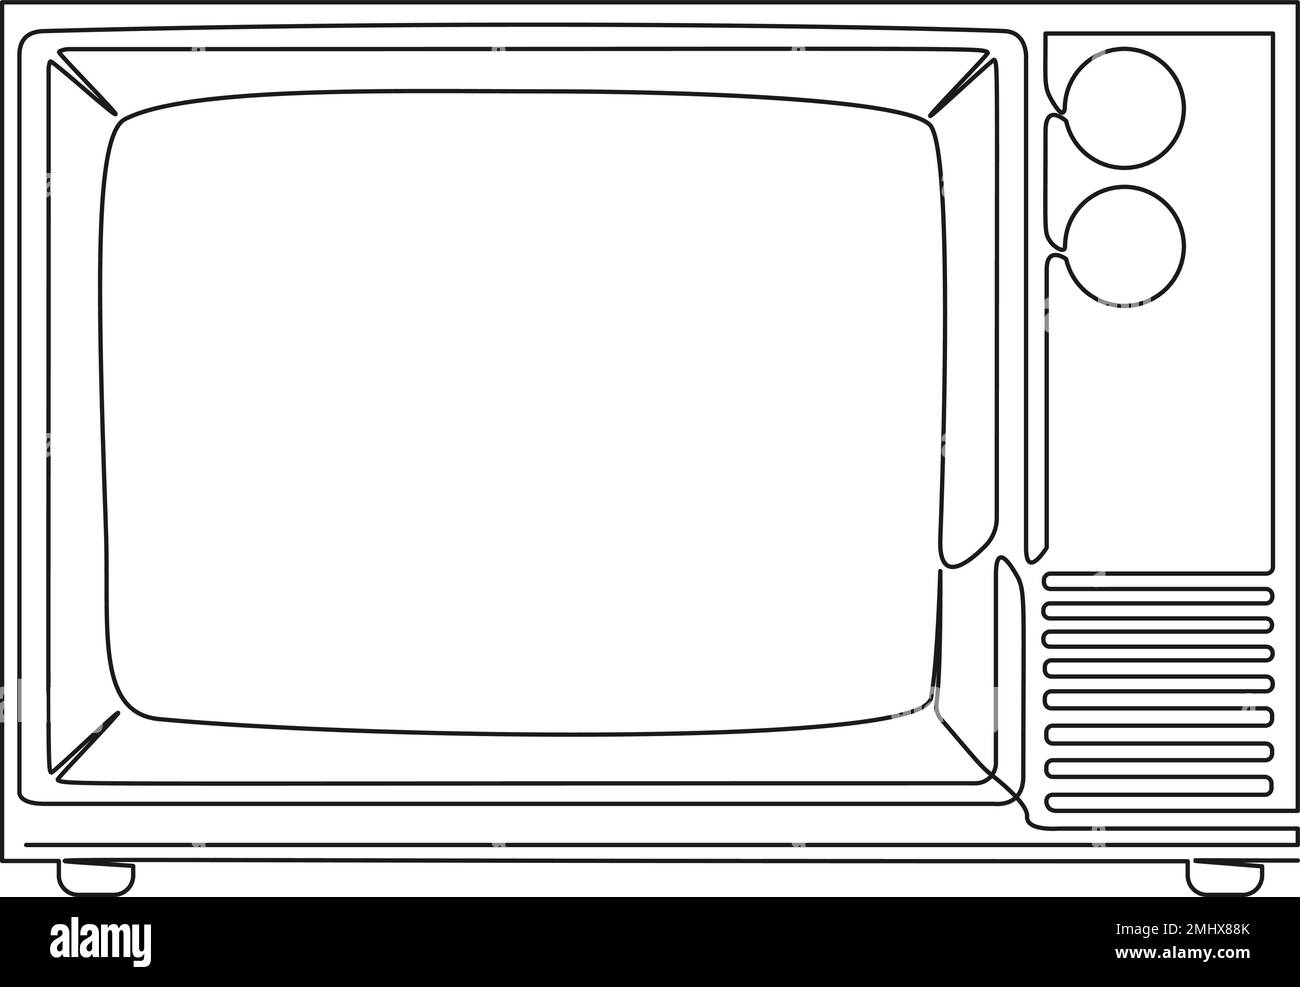 Durchgehende einzeilige Zeichnung eines alten röhrenfernsehers, Strichgrafiken-Vektordarstellung Stock Vektor